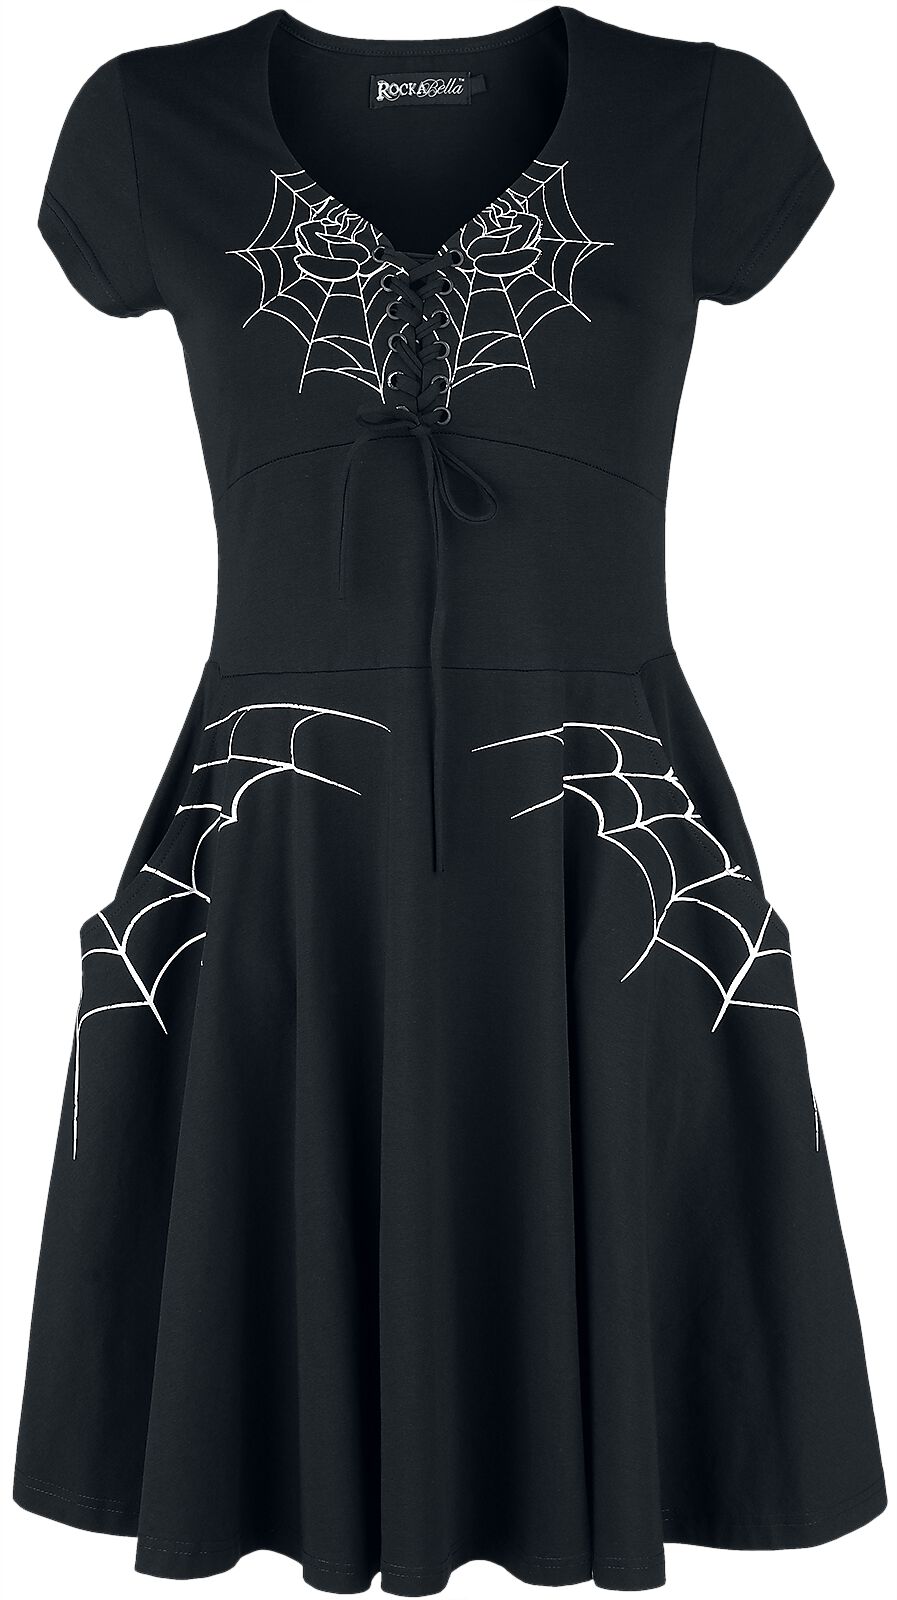 Rockabella - Gothic Kurzes Kleid - Black Widow Dress - S bis 4XL - für Damen - Größe M - schwarz/weiß